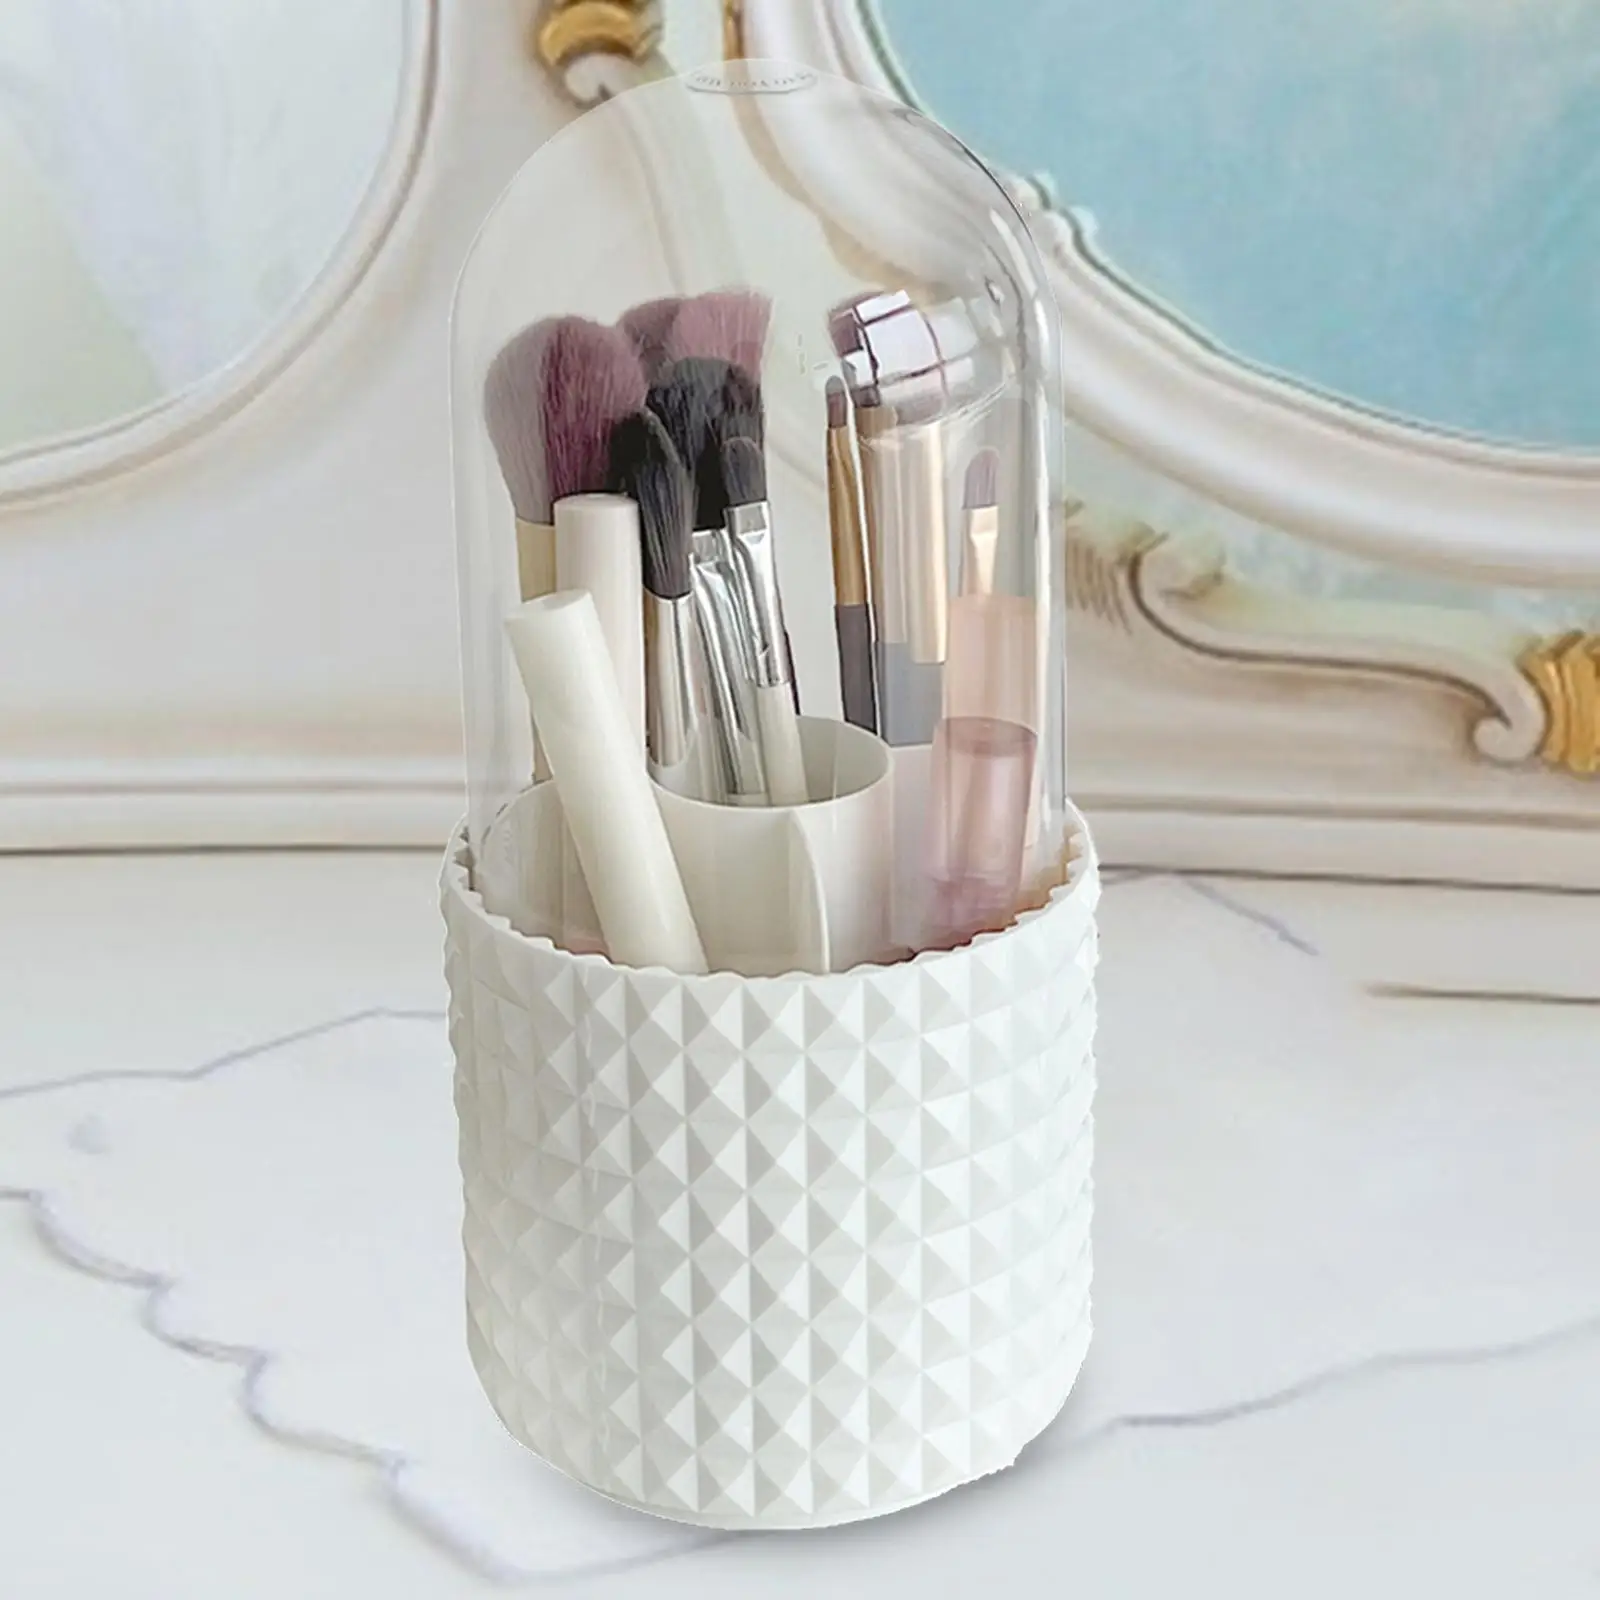 Makeup cosmetics brush Holder Countertop Waterproof for Dresser Bedroom Combs